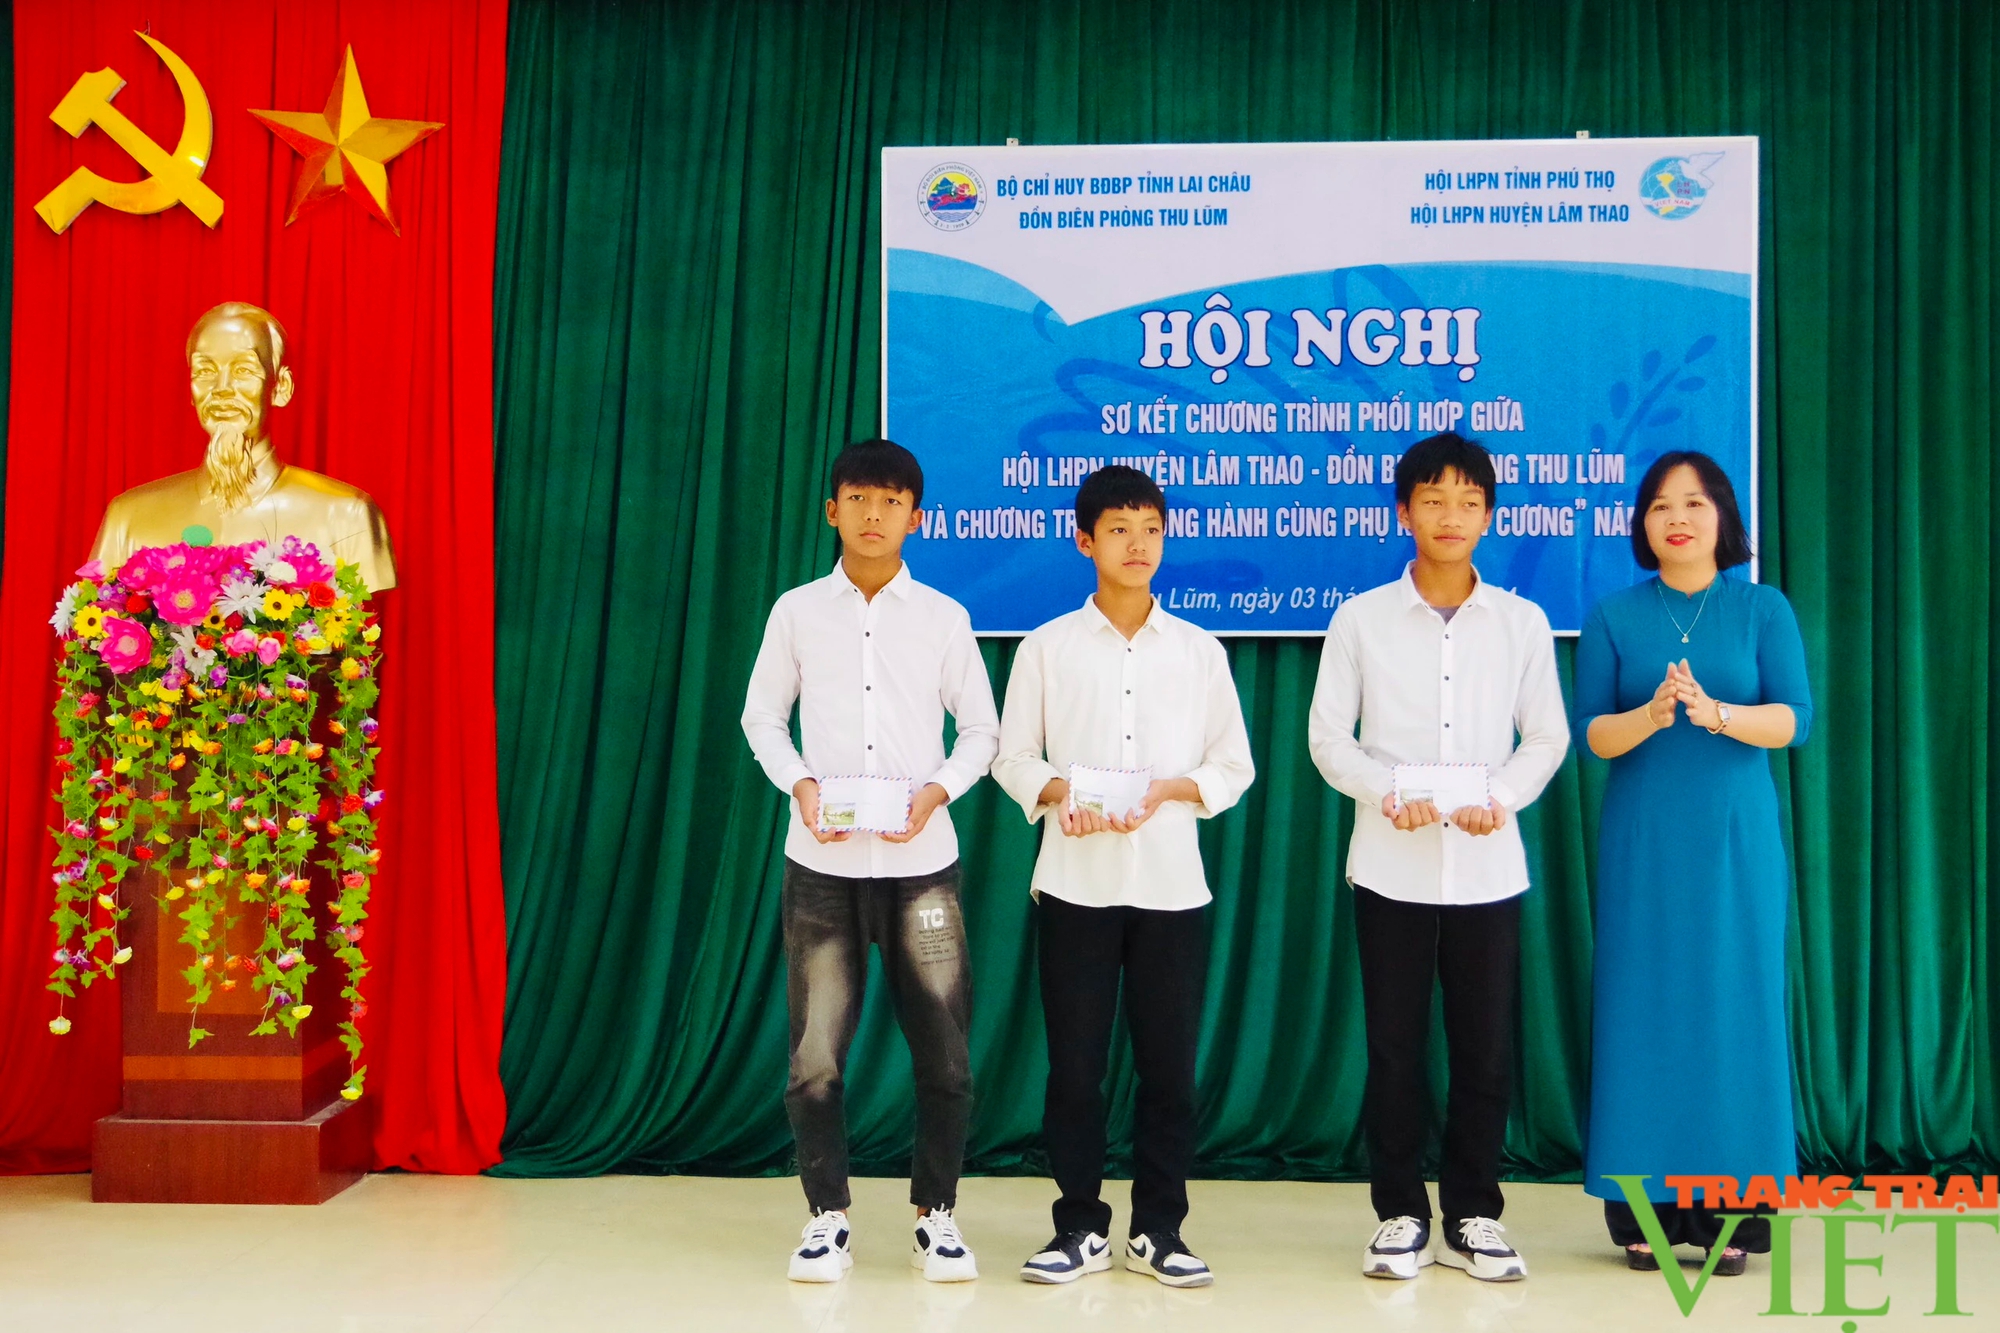 Lai Châu: Sơ kết chương trình phối hợp giữa Đồn Biên phòng Thu Lũm và Hội LHPN huyện Lâm Thao, Phú Thọ- Ảnh 11.